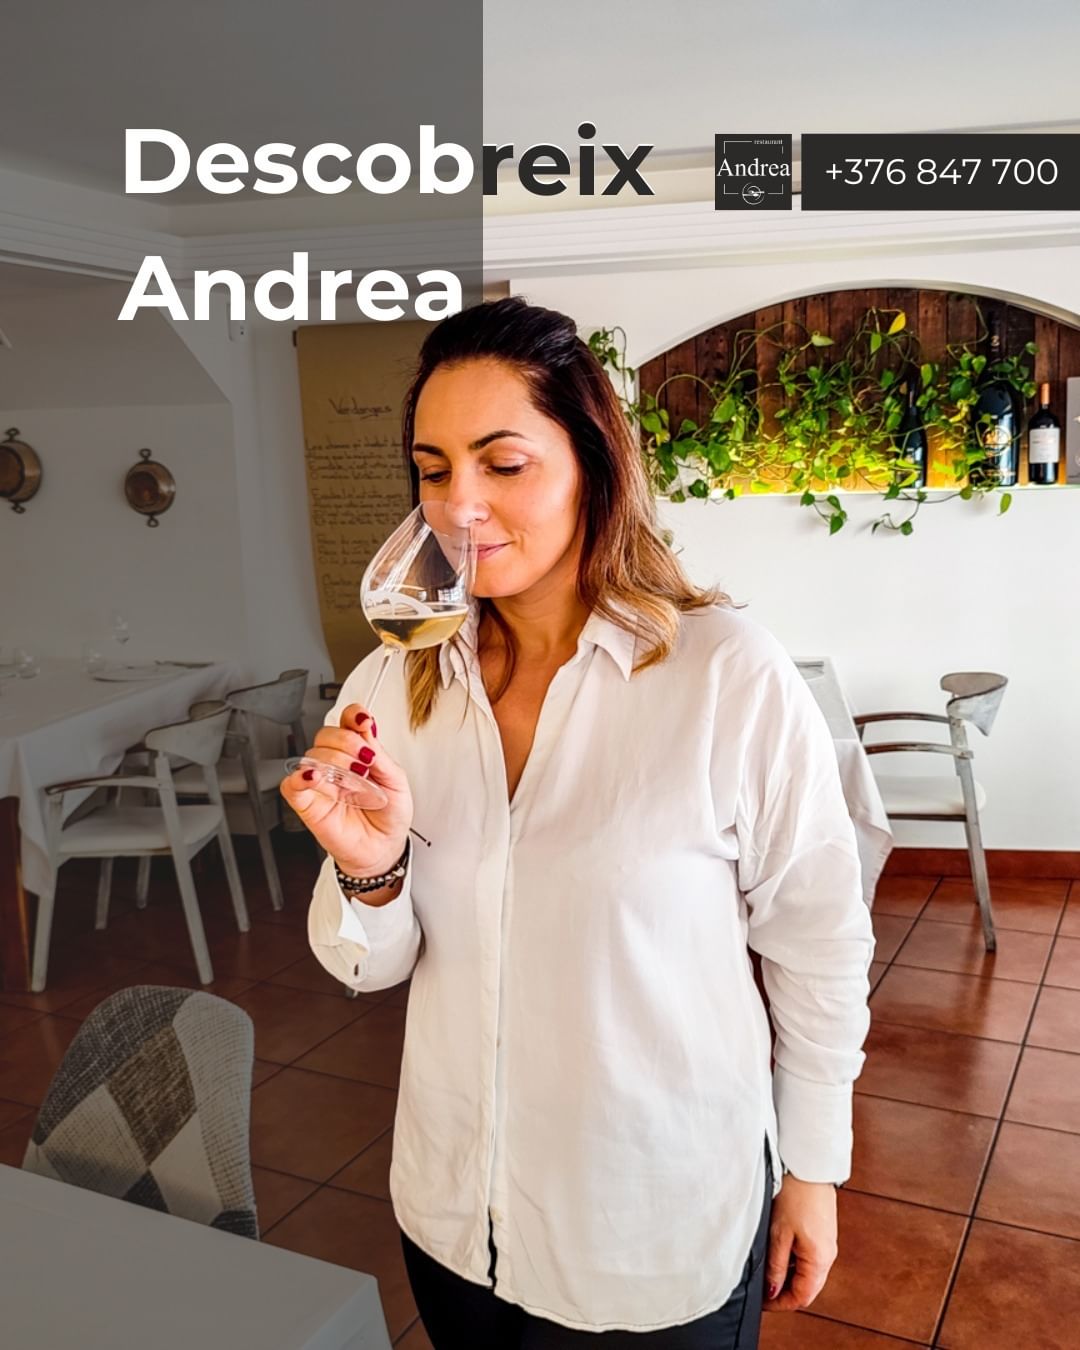 Viatge a la Massana Andorra al maridatge perfecte al Restaurant Andrea. Descobreix els nostres vins exclusius al Restaurant Andrea! 🍇 Vine i gaudeix d'una experiència enològica única, amb un maridatge perfecte dels nostres deliciosos plats. T'esperem per brindar junts! 🥂 ☎️ +376 847 700 📍 C/ Costes de Teixidó, 4 La Massana #instagram #andorra #restaurantandorra #andorrarestaurant  #instagood #food #foodie #foodphotography #photooftheday #healthyfood #instafood #delicious #cookingvideo La restauració, de la mà de grans sommeliers catalans, ha viscut una gran revolució pel que fa als maridatges, molts d’ells protagonitzats per vins catalans. El sommelier Joan Lluís Gómez, conegut sobretot pel seu pas pel tri estrellat restaurant Sant Pau de Carme Ruscalleda, fa temps que ha encaminat la seva tasca professional cap al món de la formació. Imparteix un curs sobre ‘Sumilleria i Maridatge’ a l’Escola d’Enoturisme de Catalunya, una formació de nivell avançat subvencionada pel Departament de Treball de la Generalitat. A les seves classes a Vilafranca del Penedès, Joan Lluís Gómez explica que un 10% de la clientela que tenia el restaurant Sant Pau de Sant Pol de Mar no bevia vi. Buscar opcions de maridatge com ara amb sucs, mostos o infusions, doncs, es va convertir en una opció.